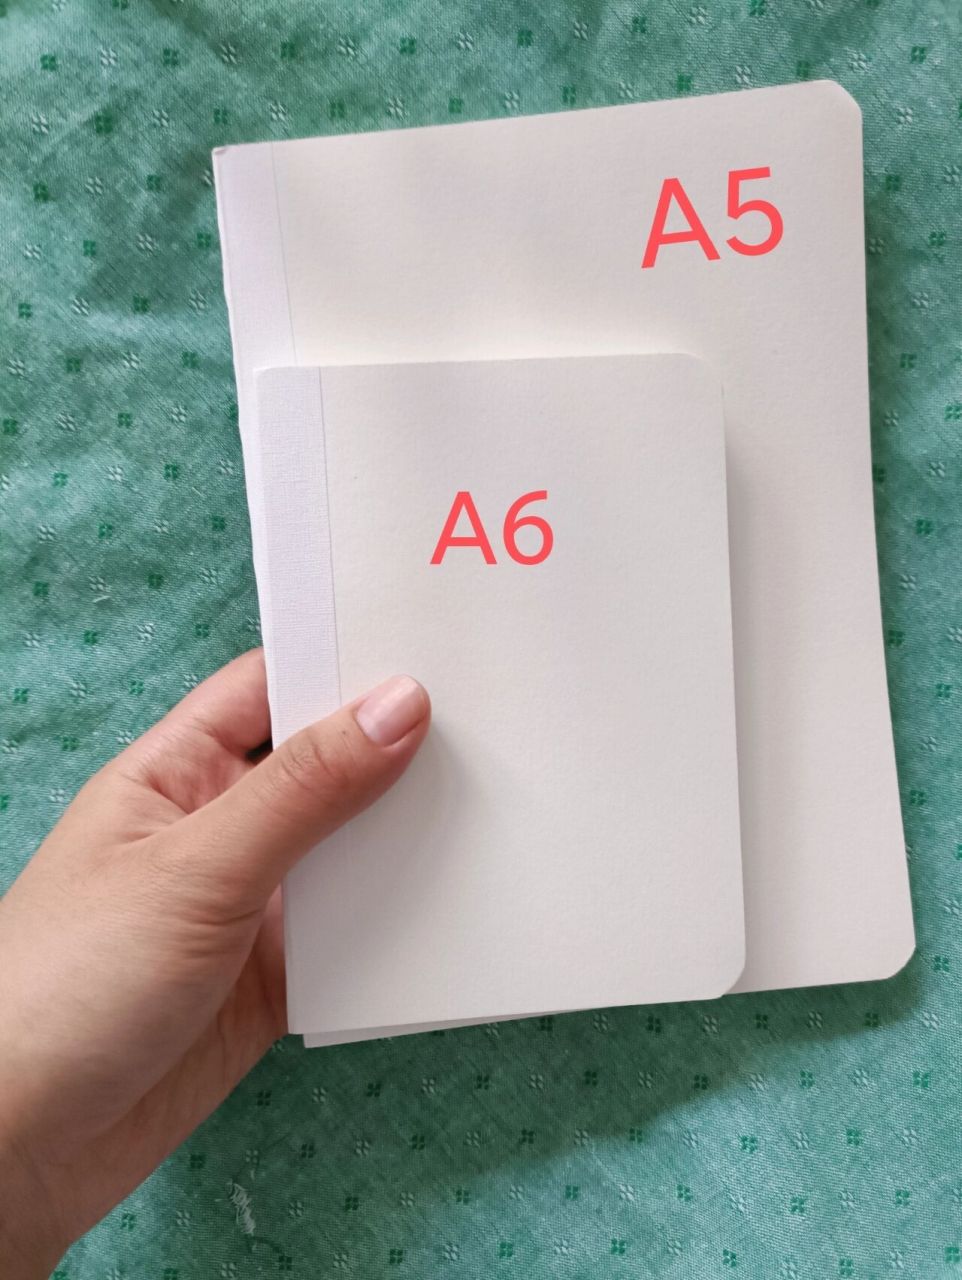 a5纸多大 对比图片